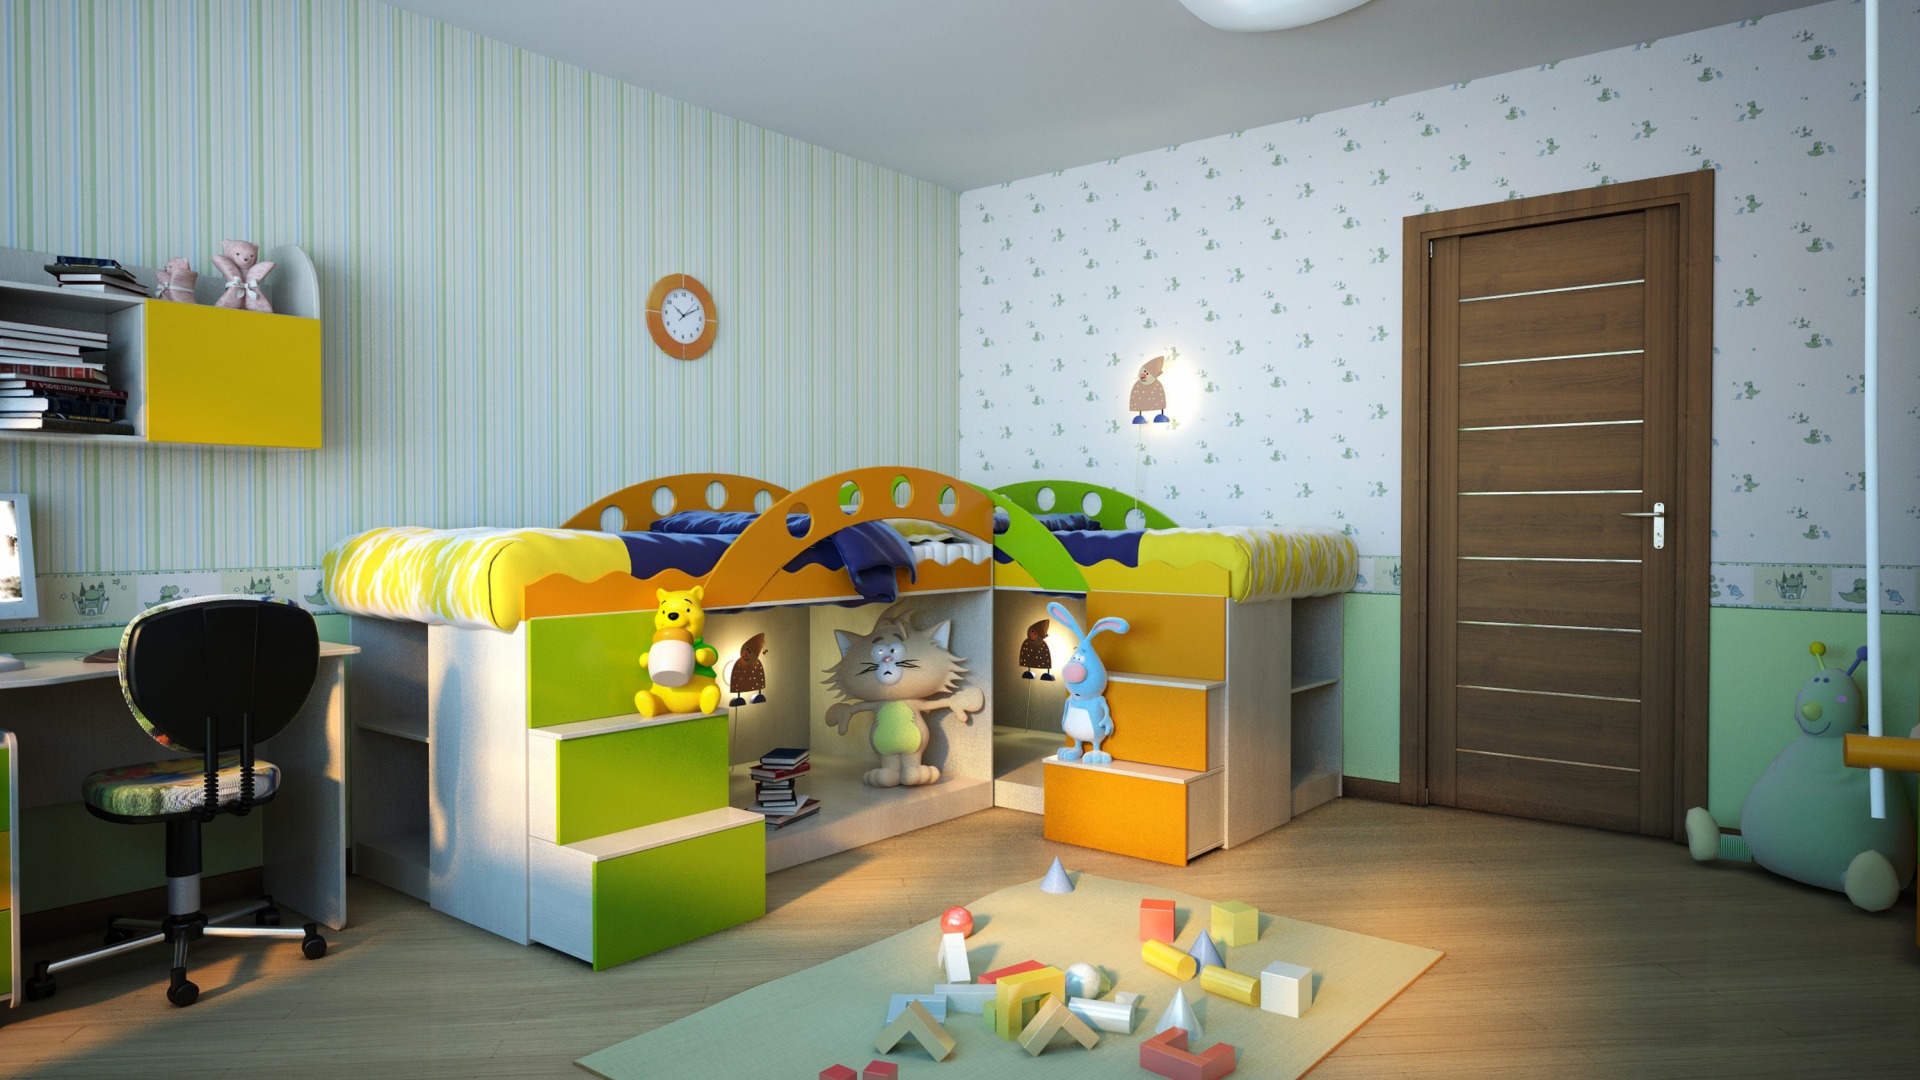 Подбор мебели для детской комнаты исходя из возраста ребенка